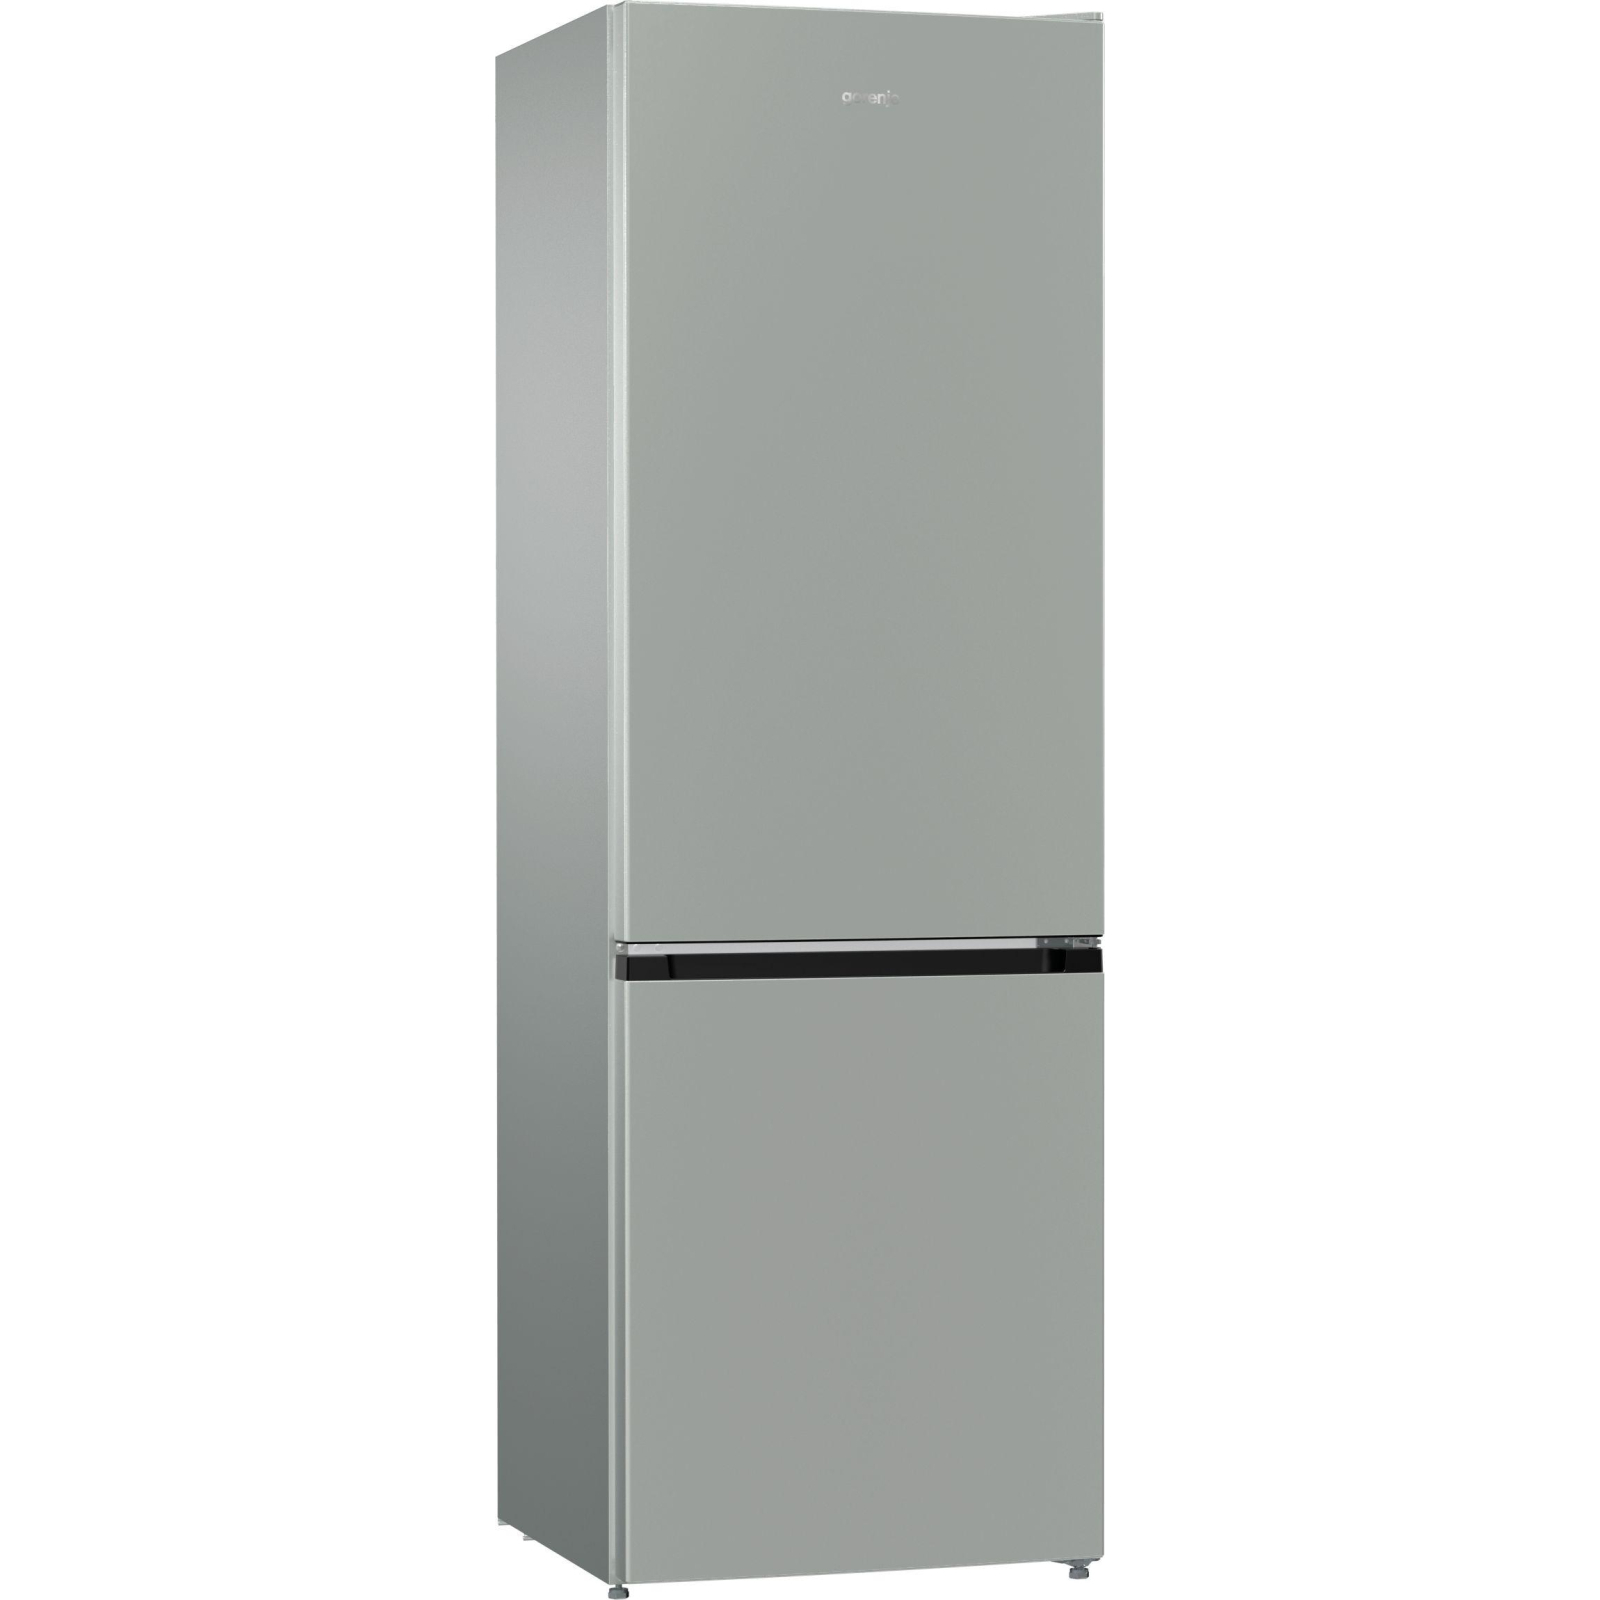 Холодильник Gorenje RK611PW4